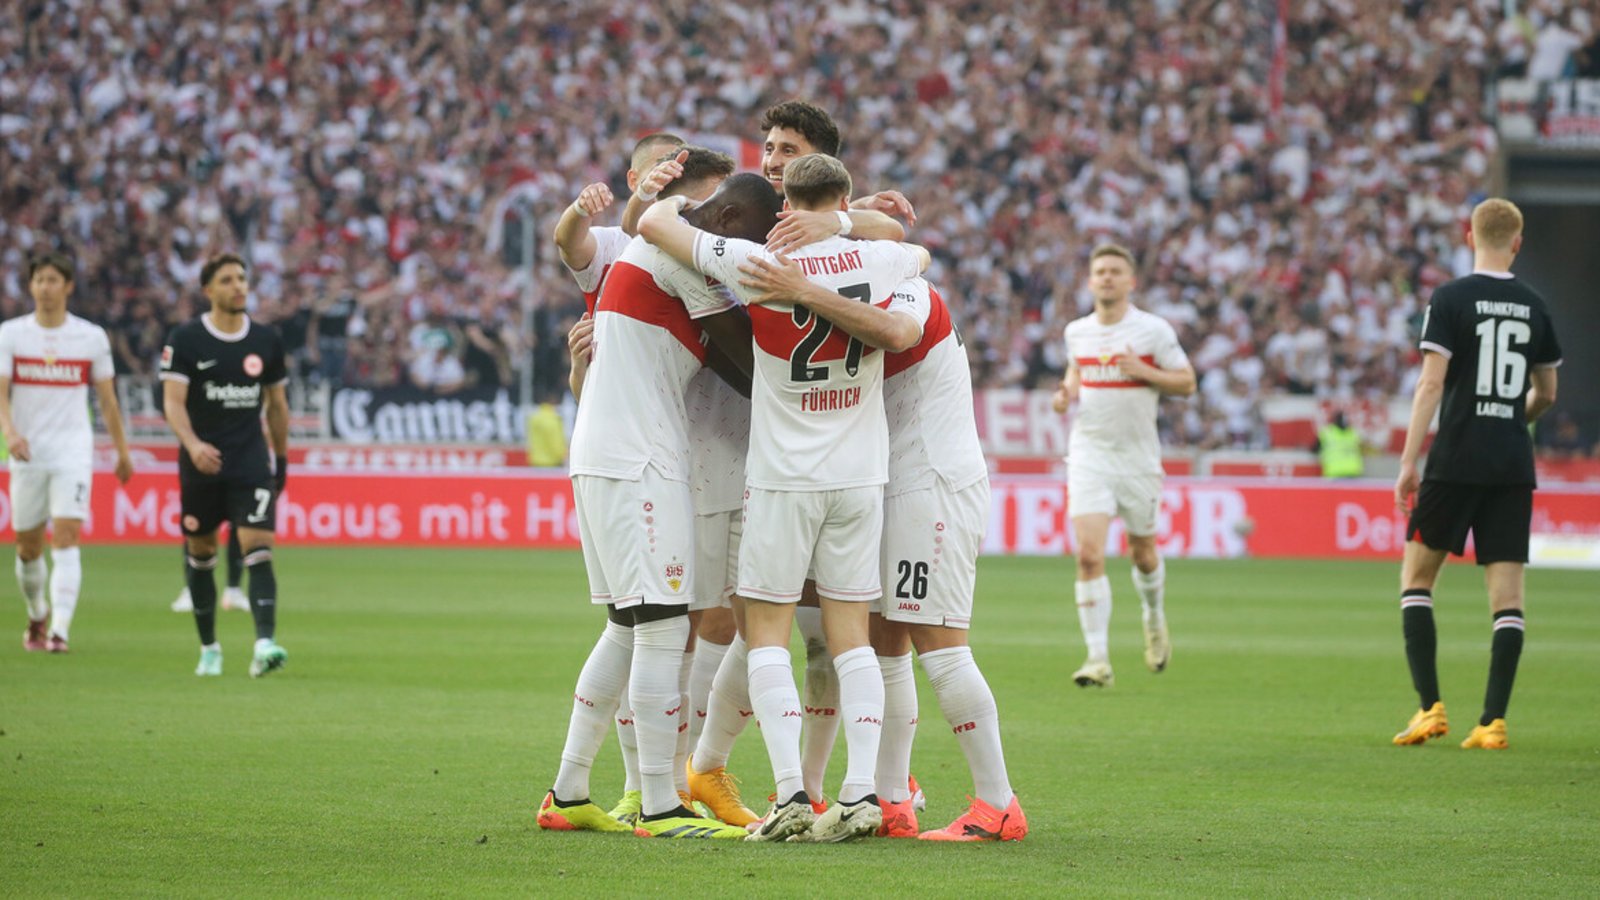 Der VfB Stuttgart wird in der kommenden Saison nach elf Jahren Abstinenz auf die internationale Bühne zurückkehren. In der Bildergalerie sehen Sie Eindrücke der Partie gegen Eintracht Frankfurt.Foto: Pressefoto Baumann/Hansjürgen Britsch